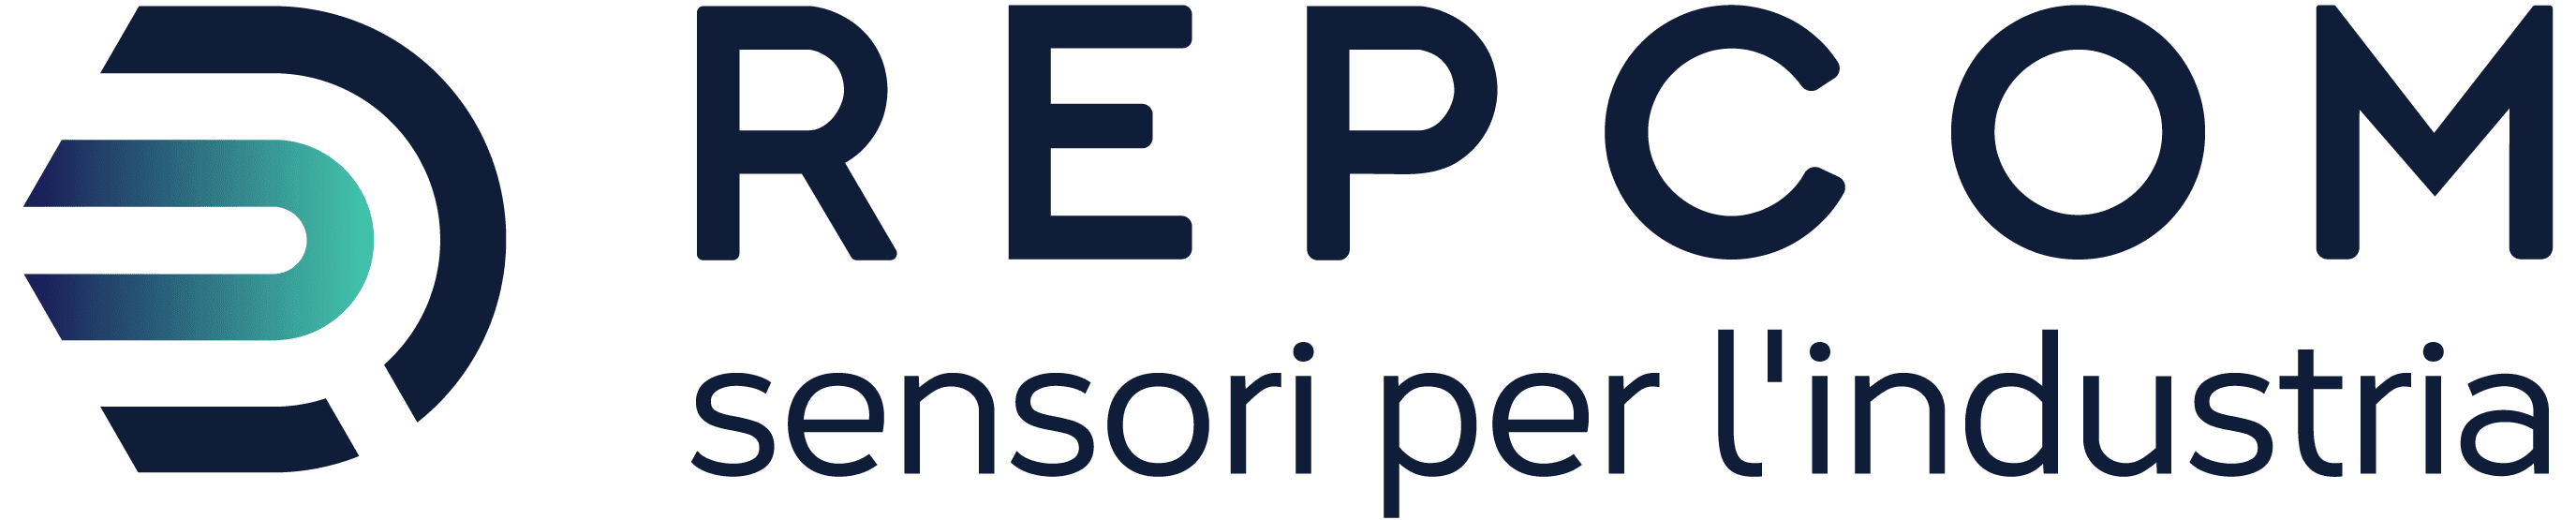 Repcom logo